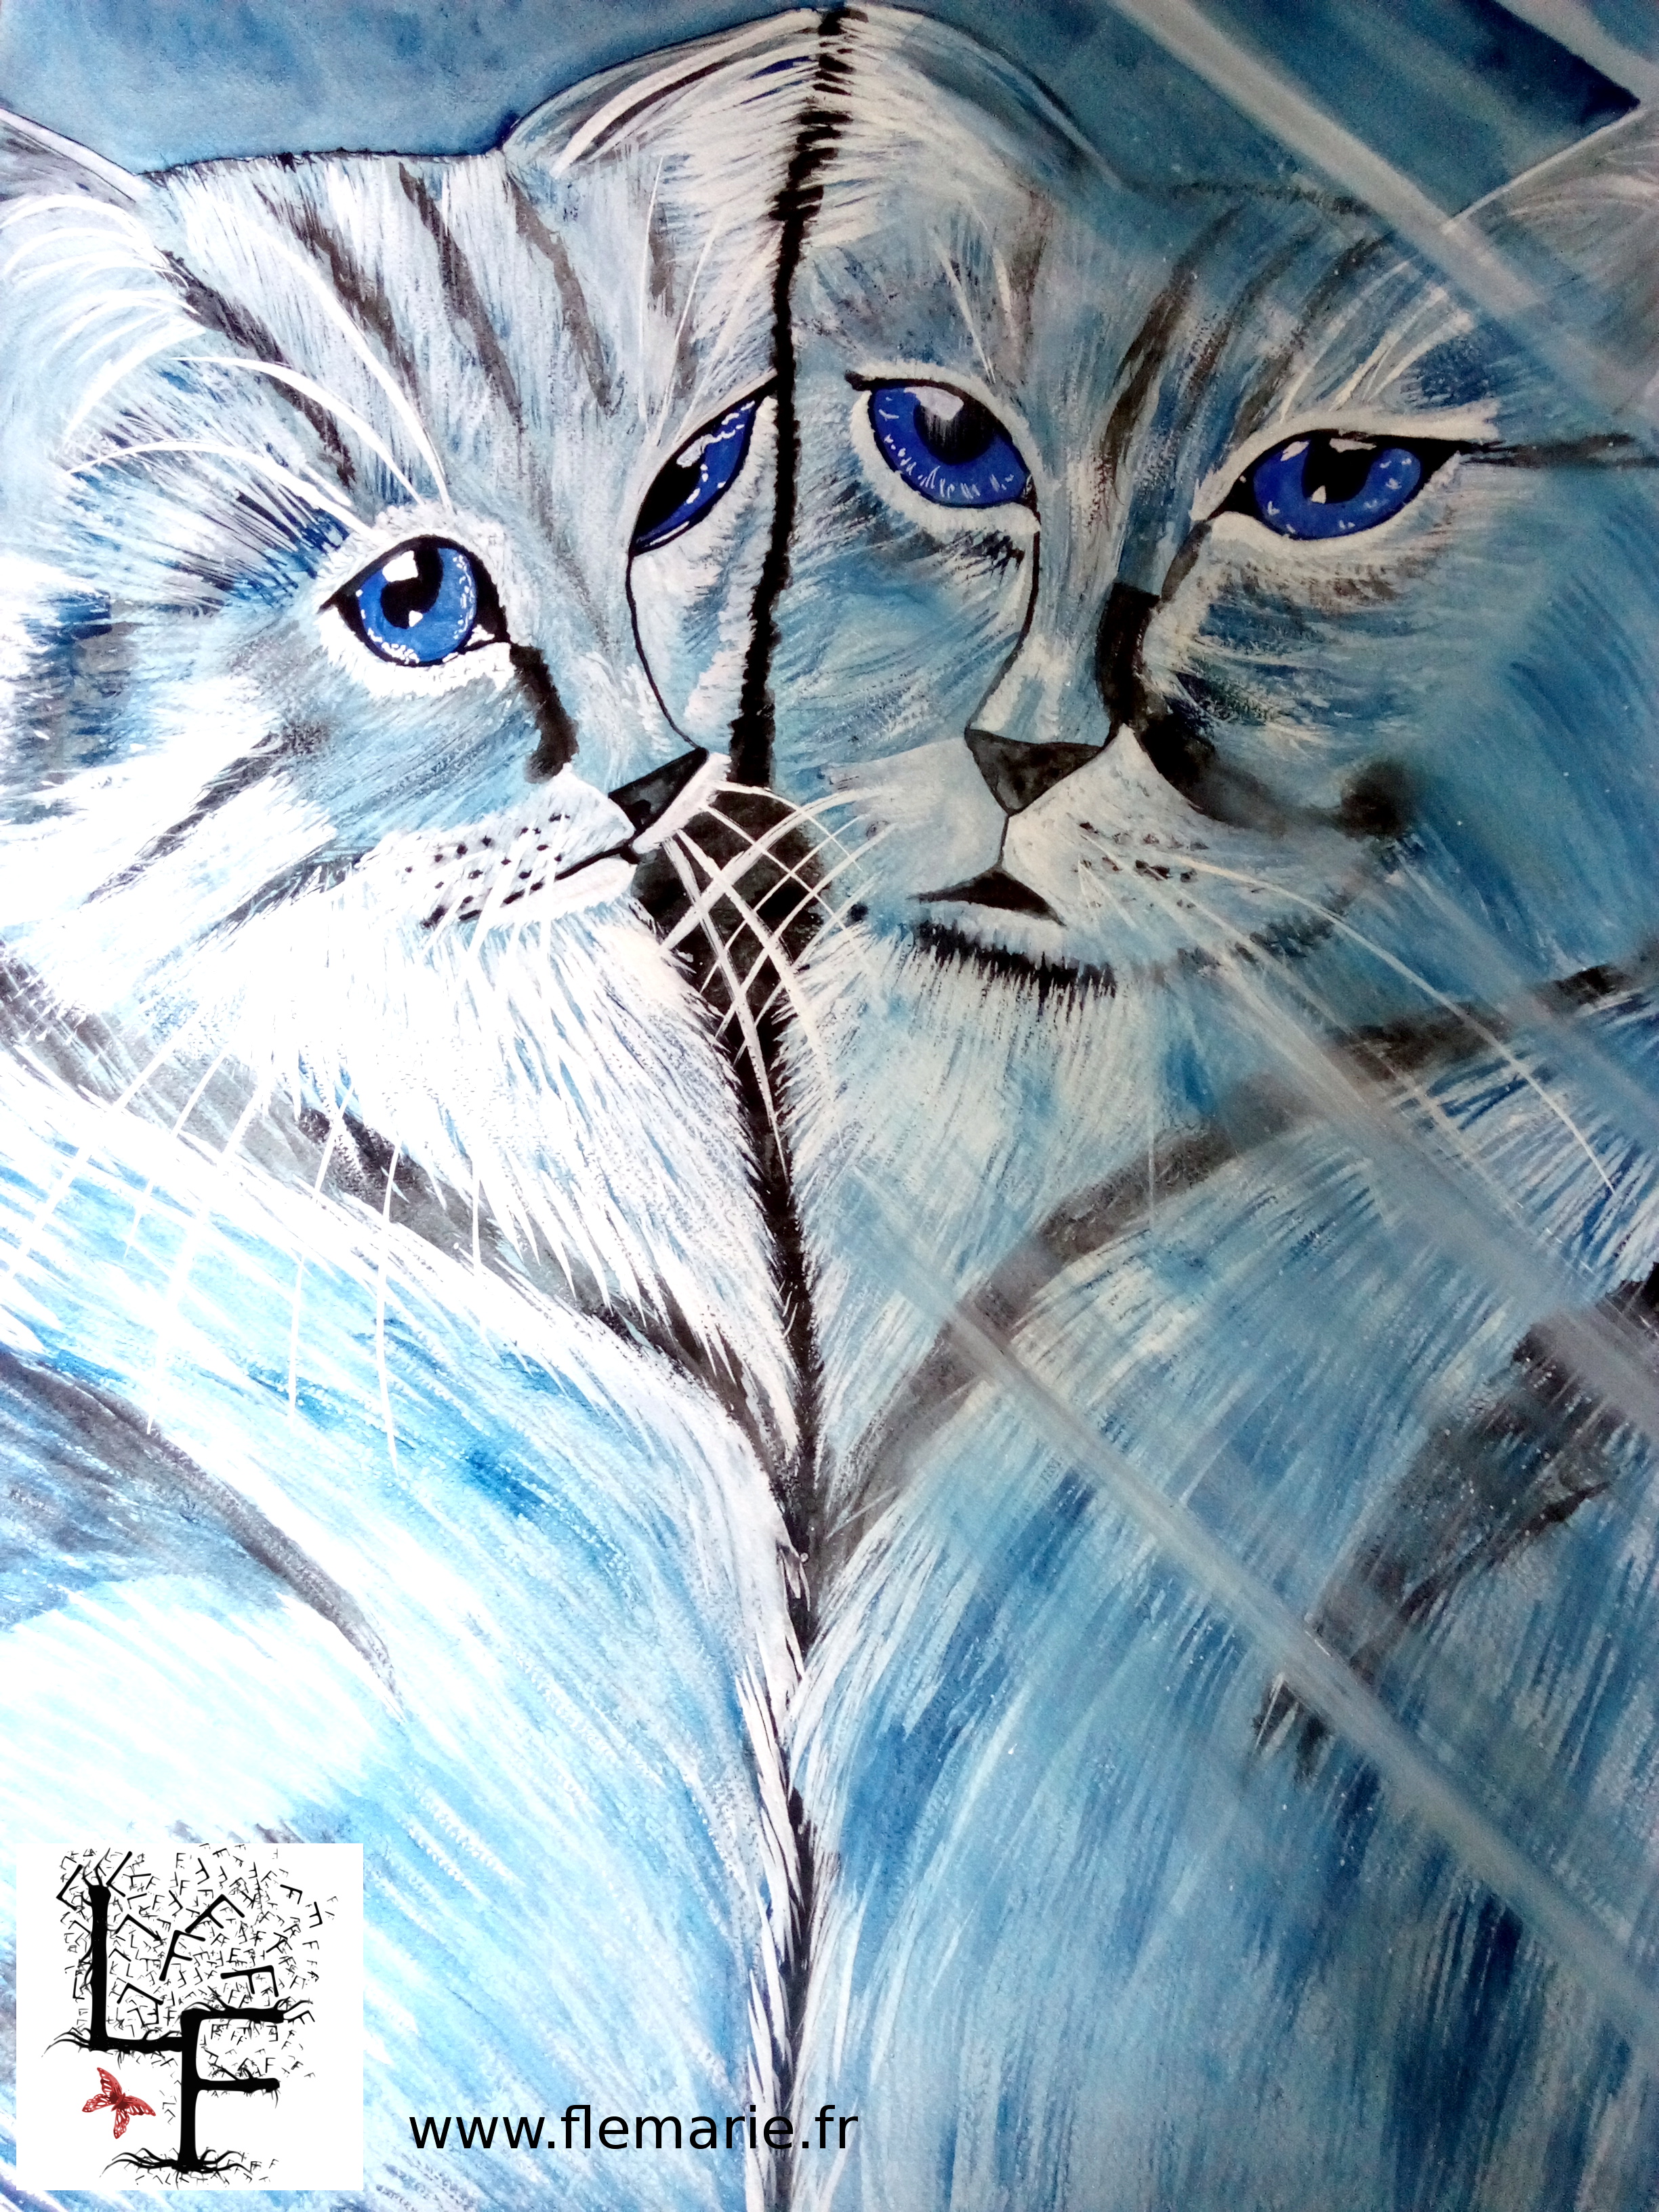 Reflet de chat  Aquarelle sur papier A2 300g/m2